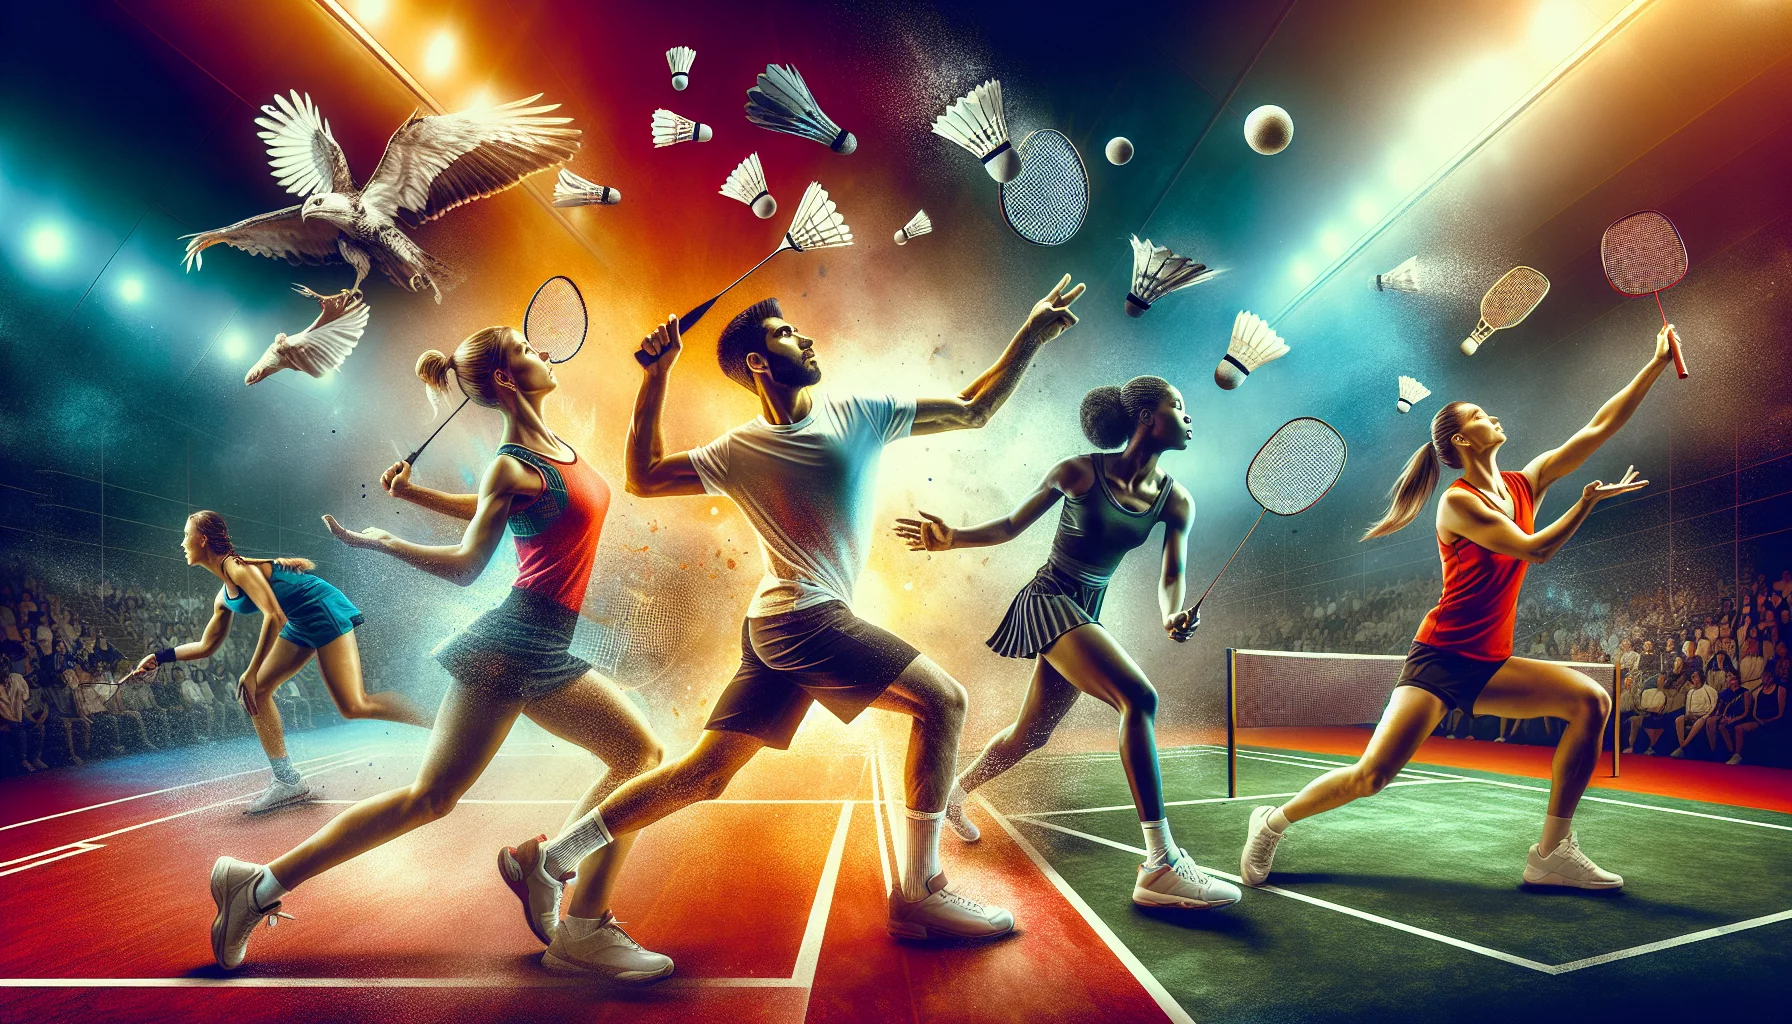 Tournoi de sports de raquette multisport, où les participants s'affrontent dans différents sports comme le tennis, le badminton et le squash.